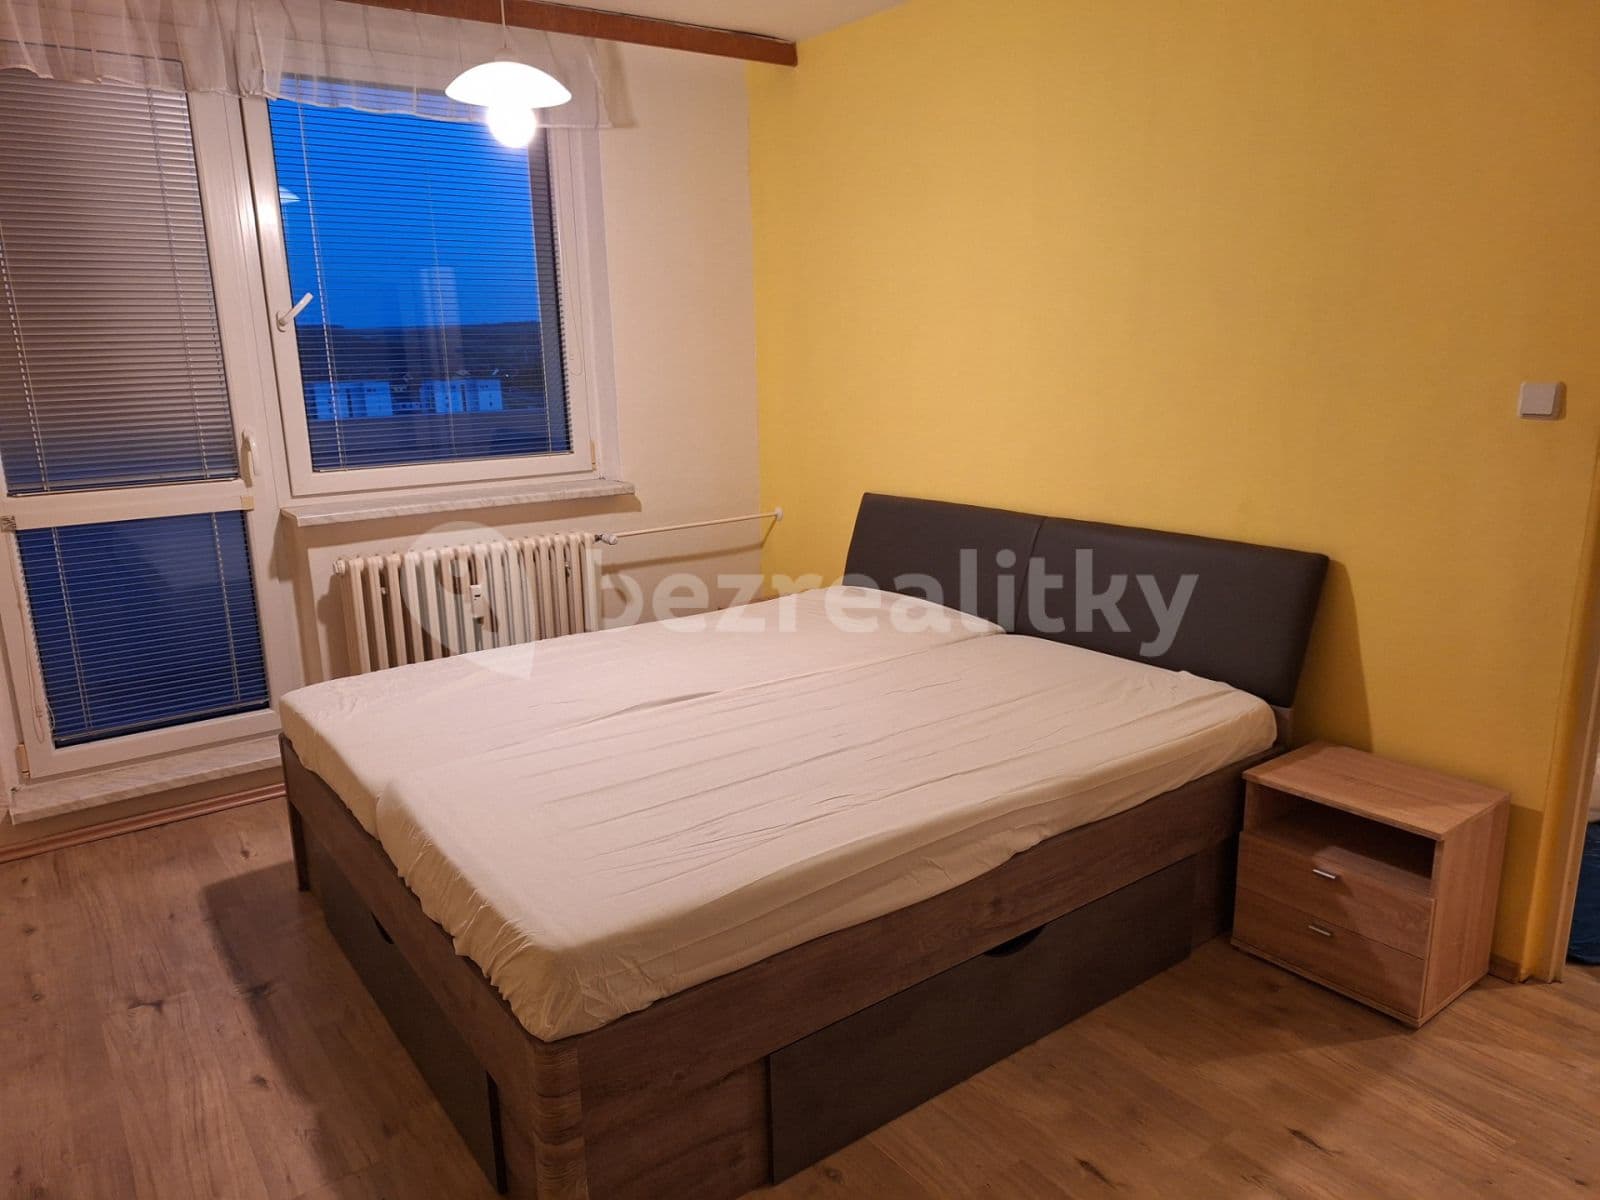 1 bedroom flat to rent, 35 m², Luční, Ivančice, Jihomoravský Region